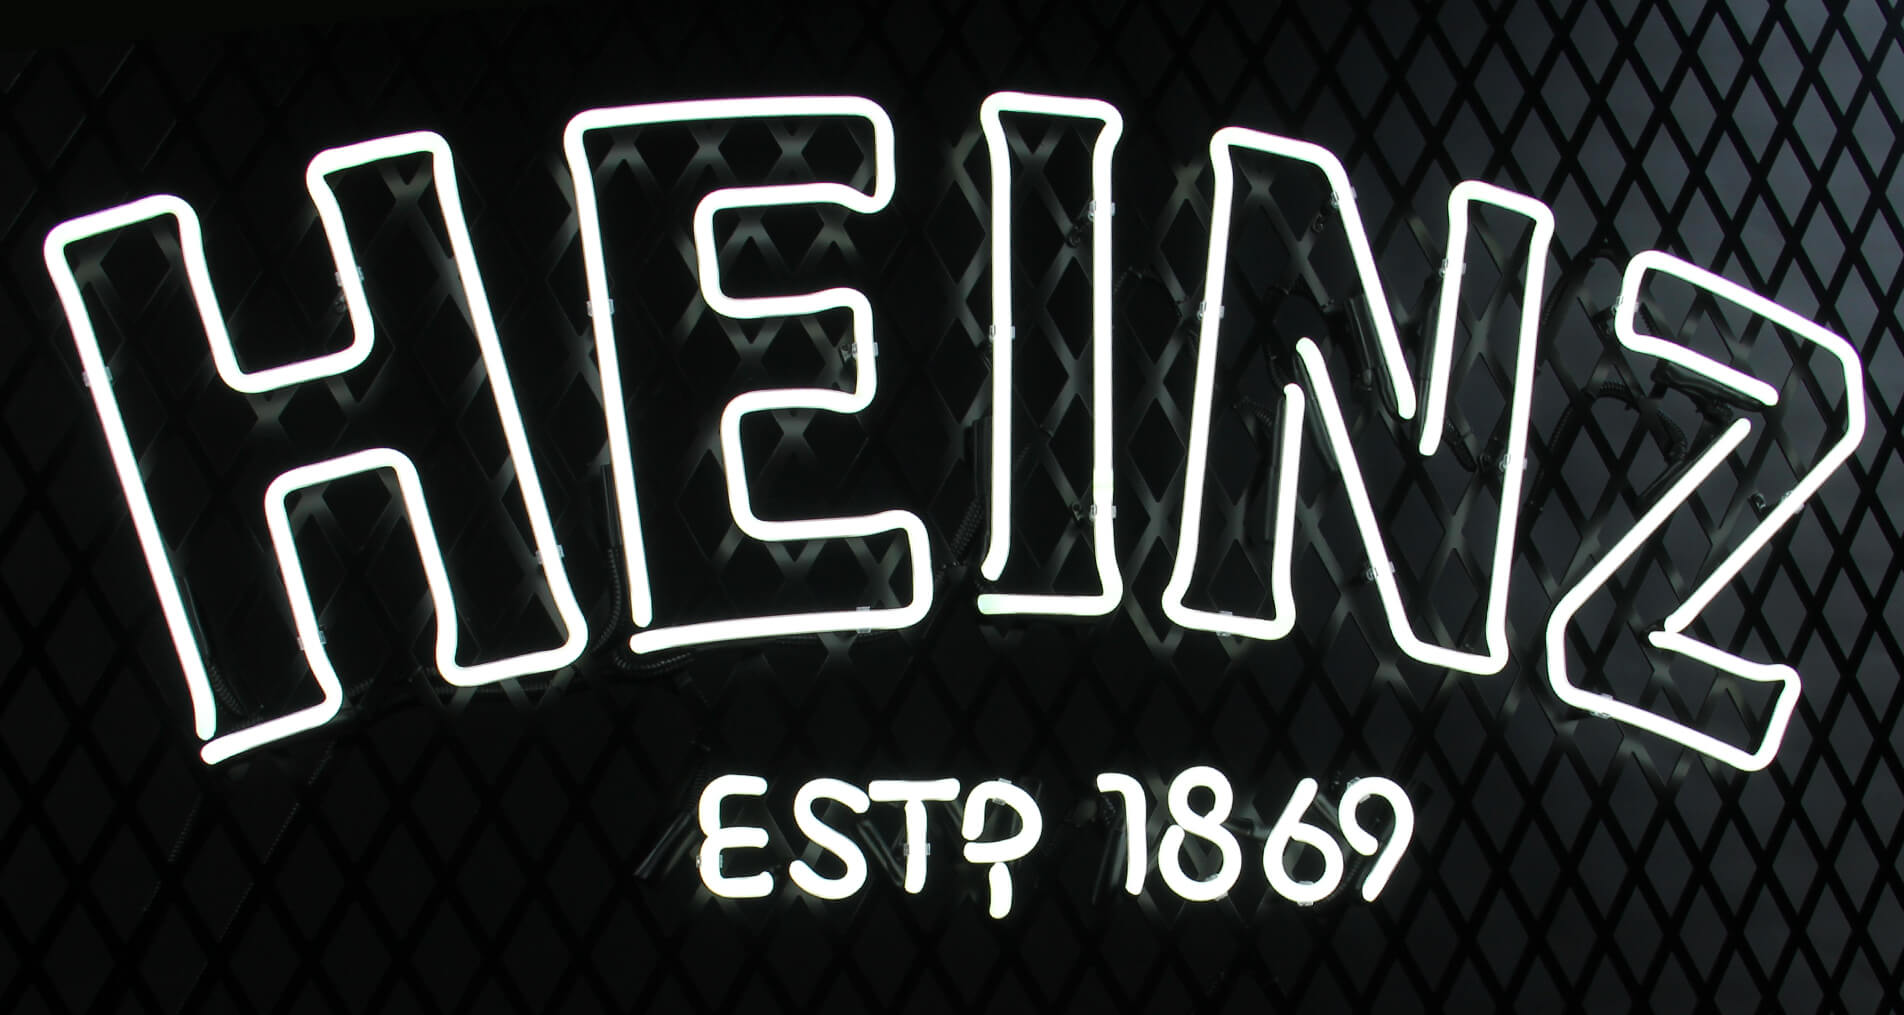 Heinz neon - Weiße Neonröhre heinz 1896